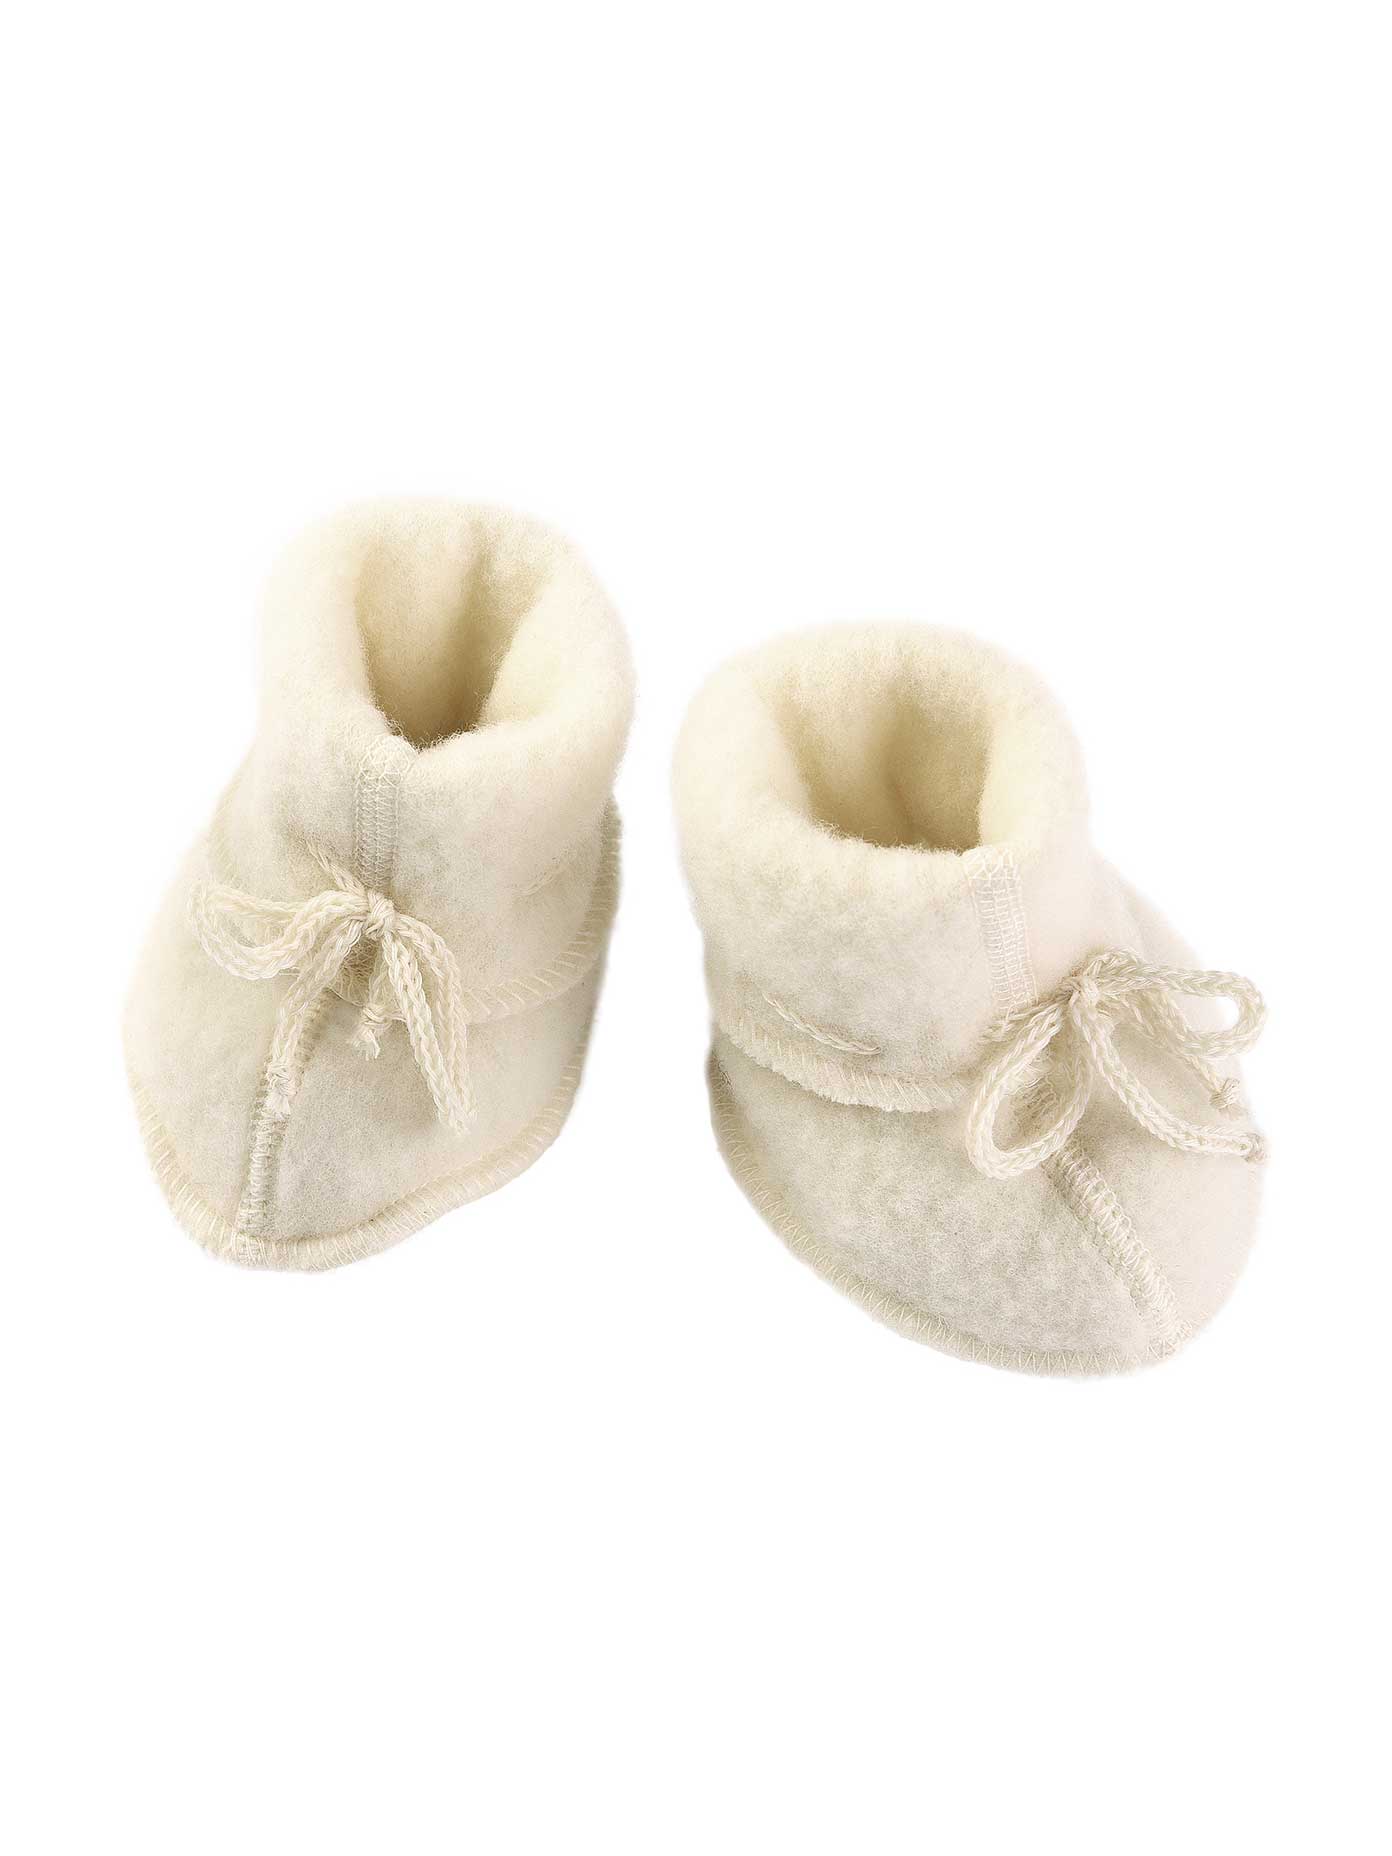 Natural Soft Fleece Baby Booties